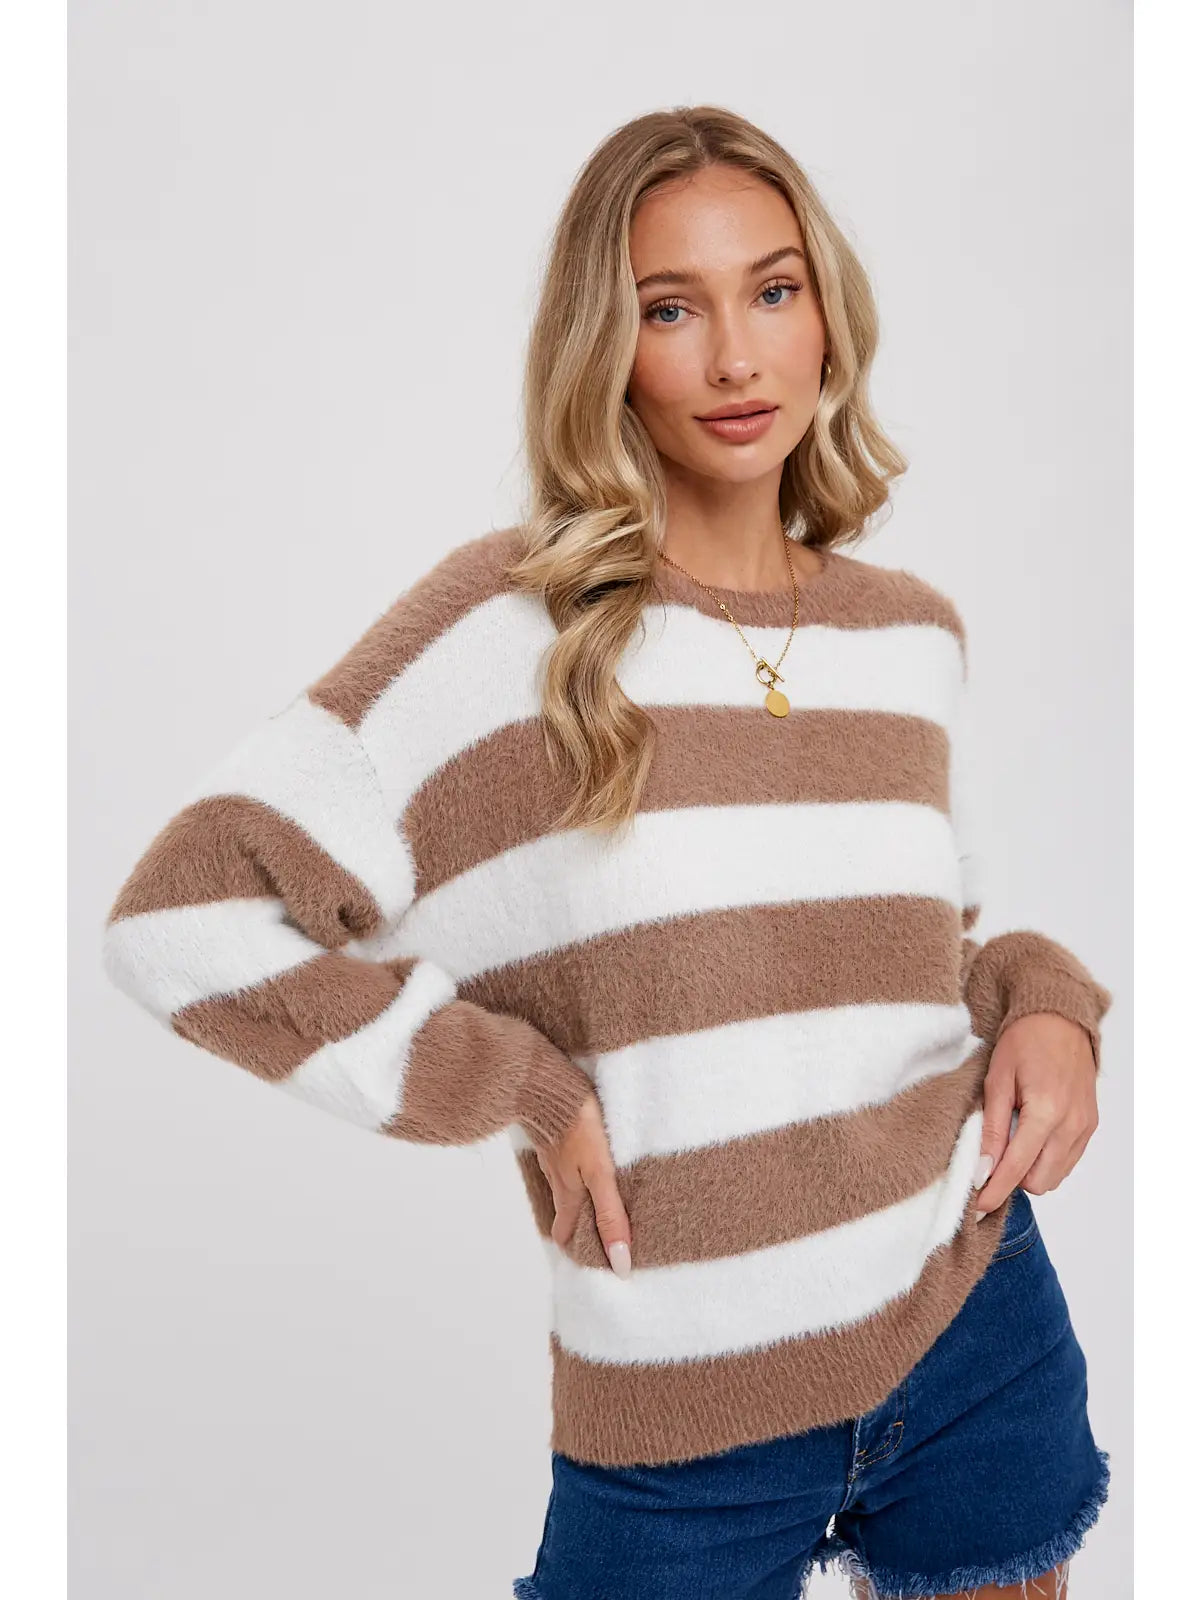 Cocoa Striped Sweater